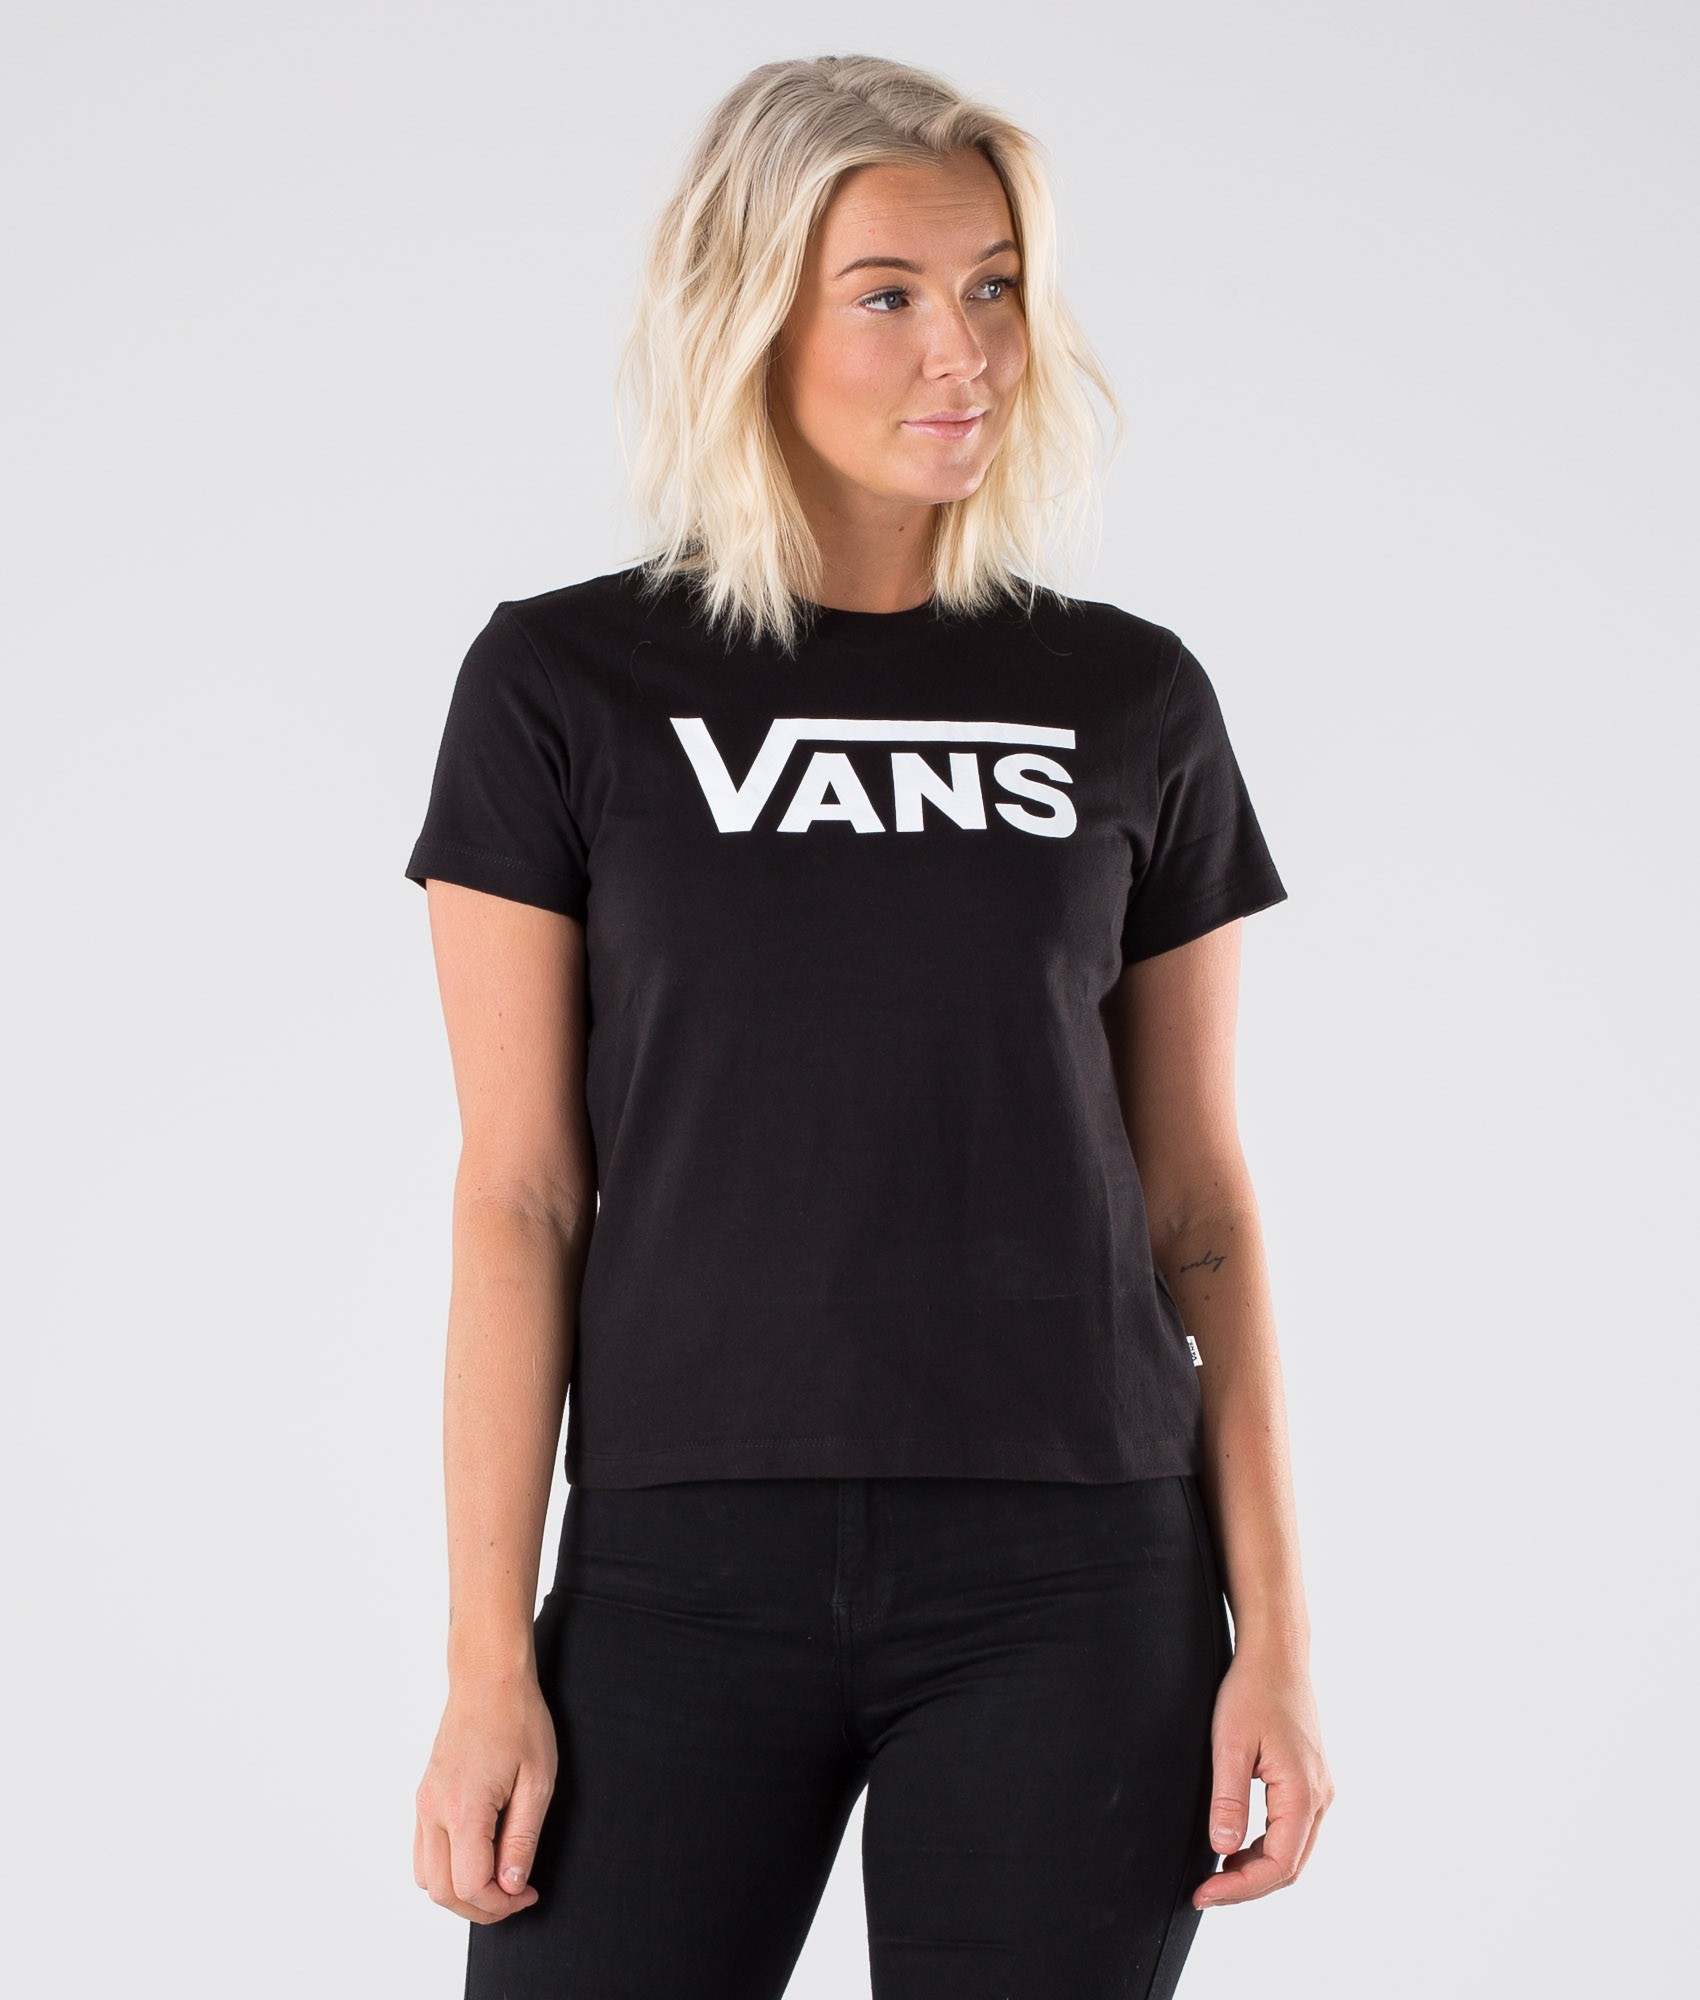 vans t shirt women's